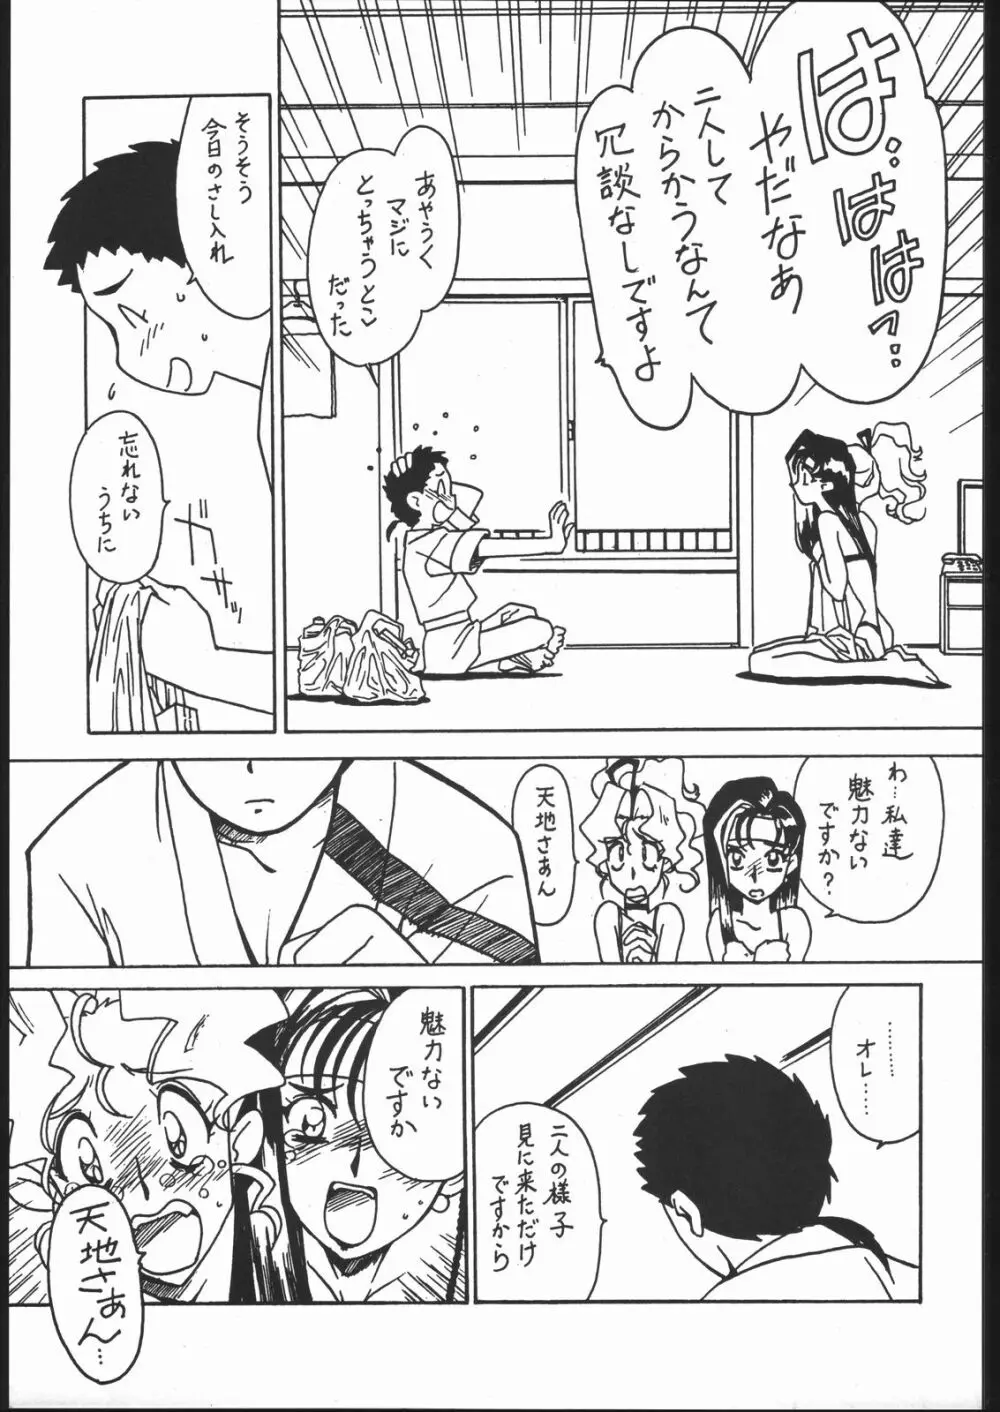 凶悪的指導 Vol.11 じゅんび号 Version 2 4ページ